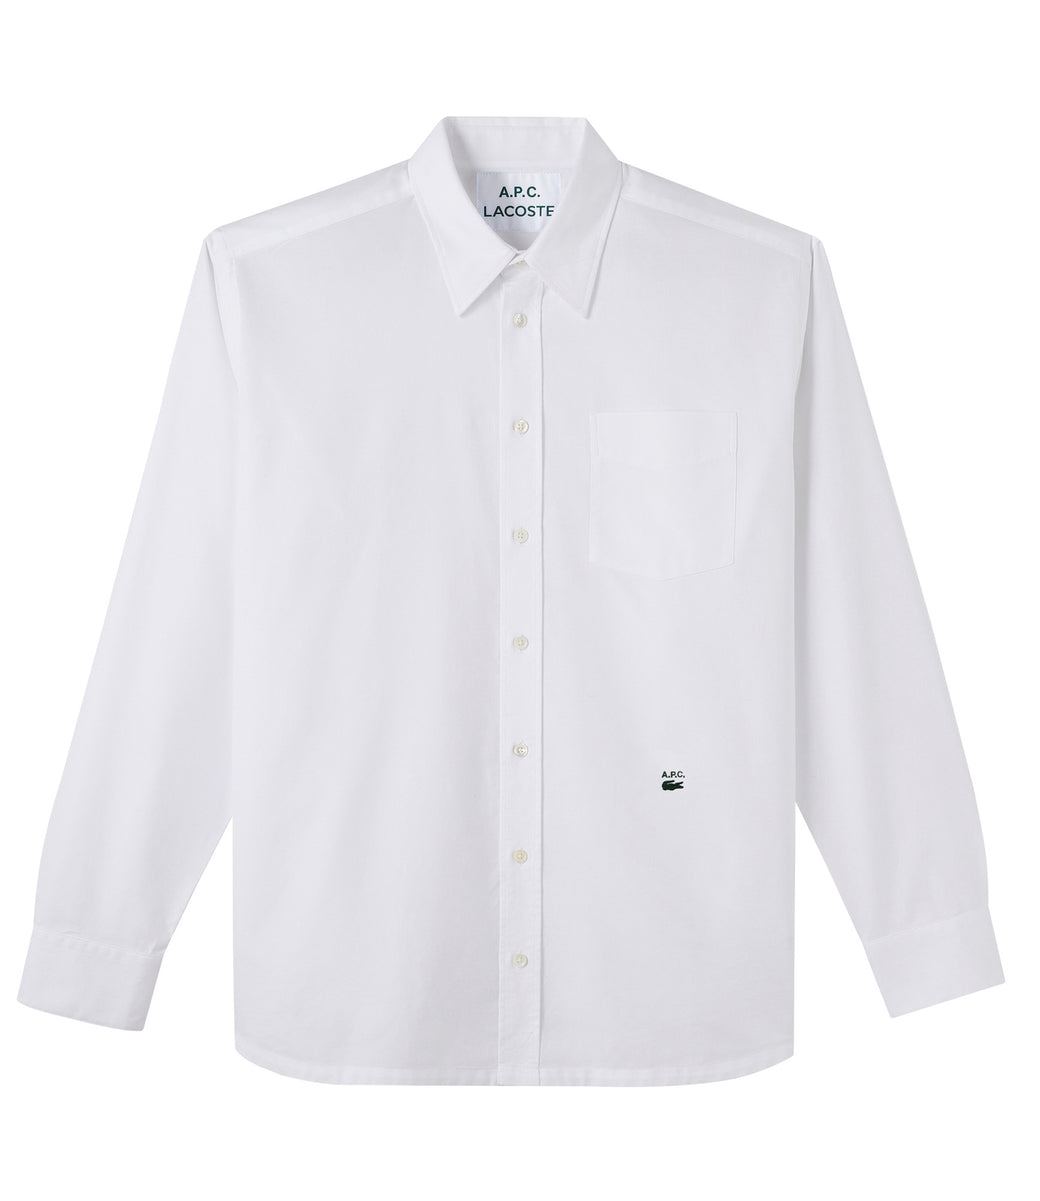 A.P.C. x Lacoste Classic Shirt White Men's - SS22 - US